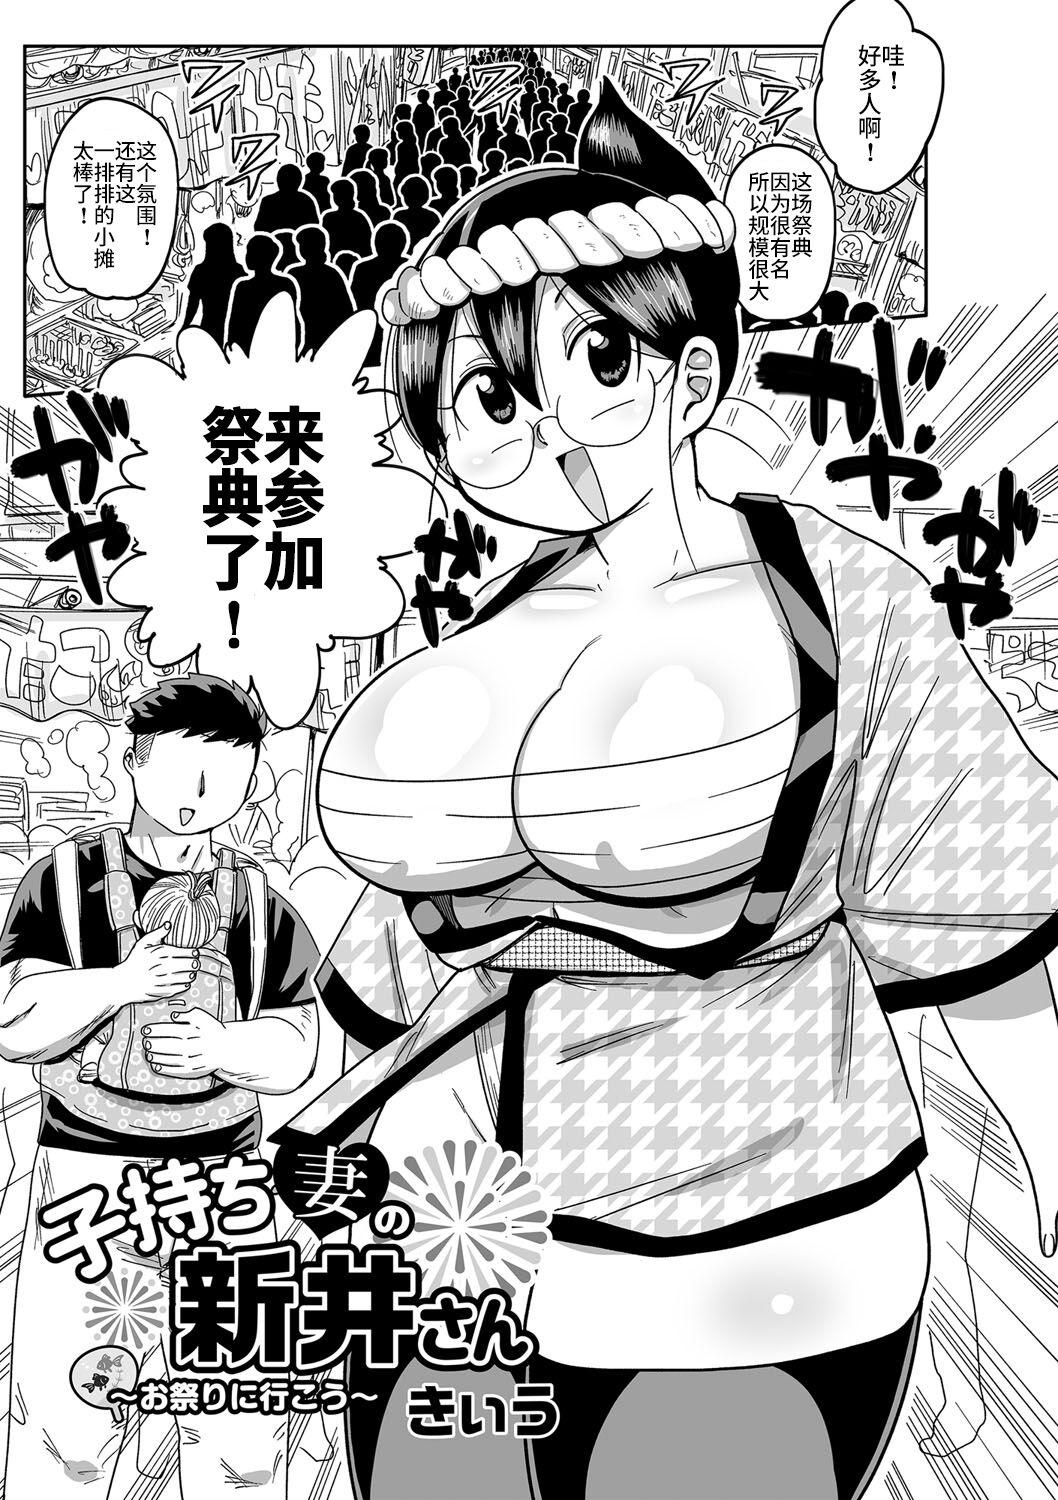 Chilena Komochi tsuma no Arai-san 〜 Omatsuri ni Ikou 〜 Tits - Page 1